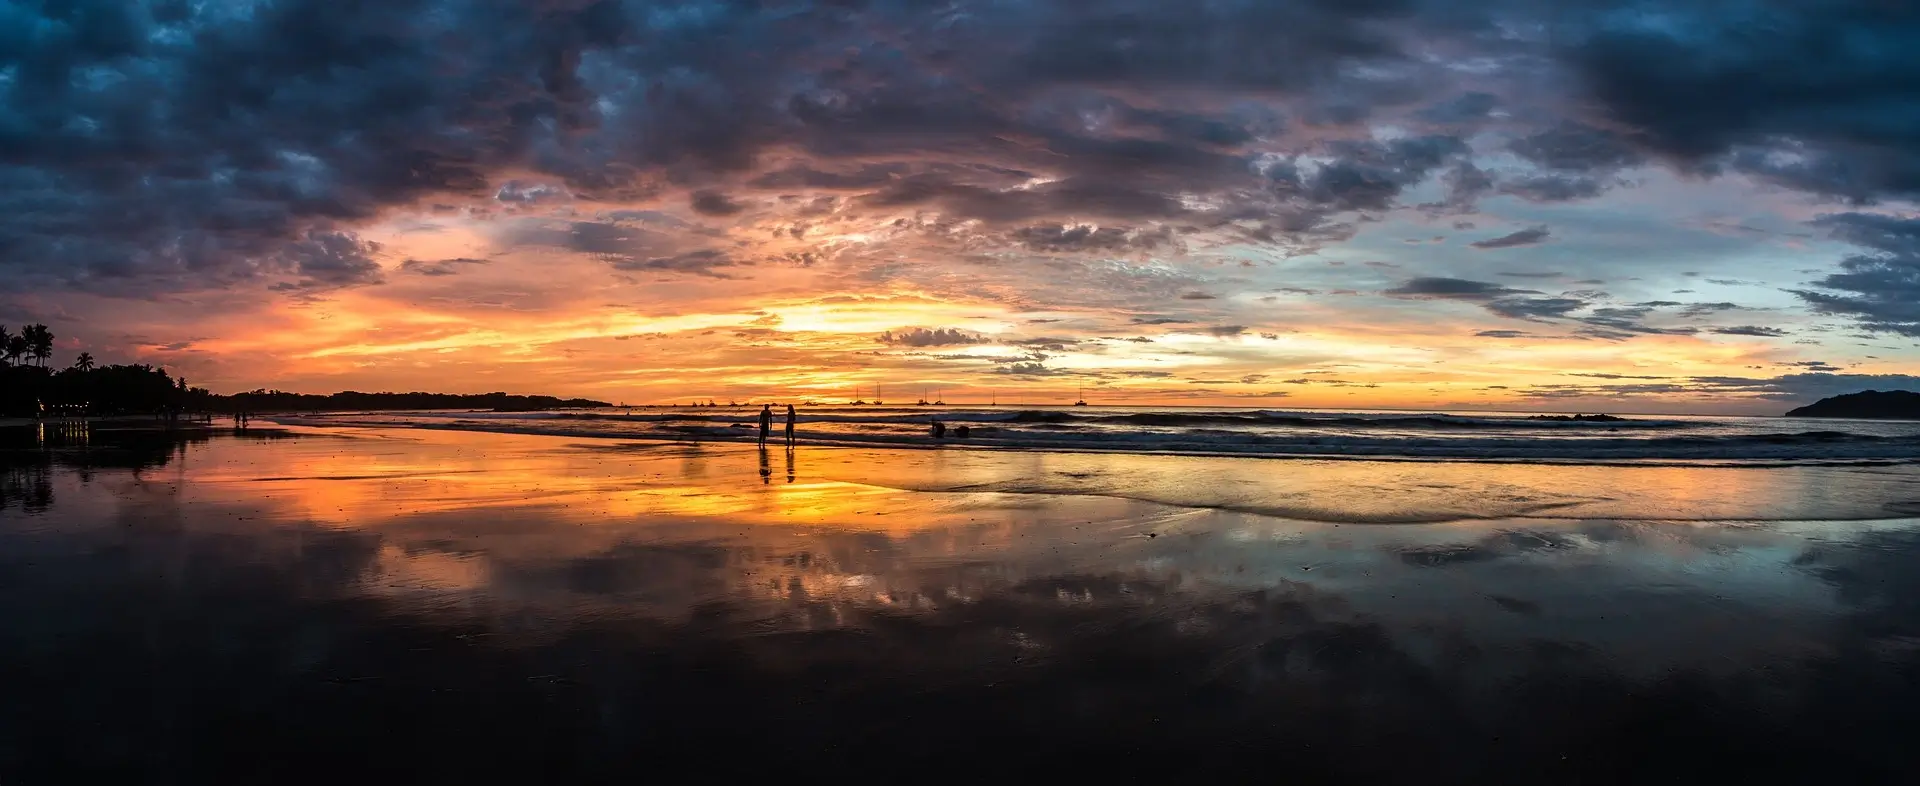 paisaje paradisíaco de playas de Costa Rica a la luz del atardecer